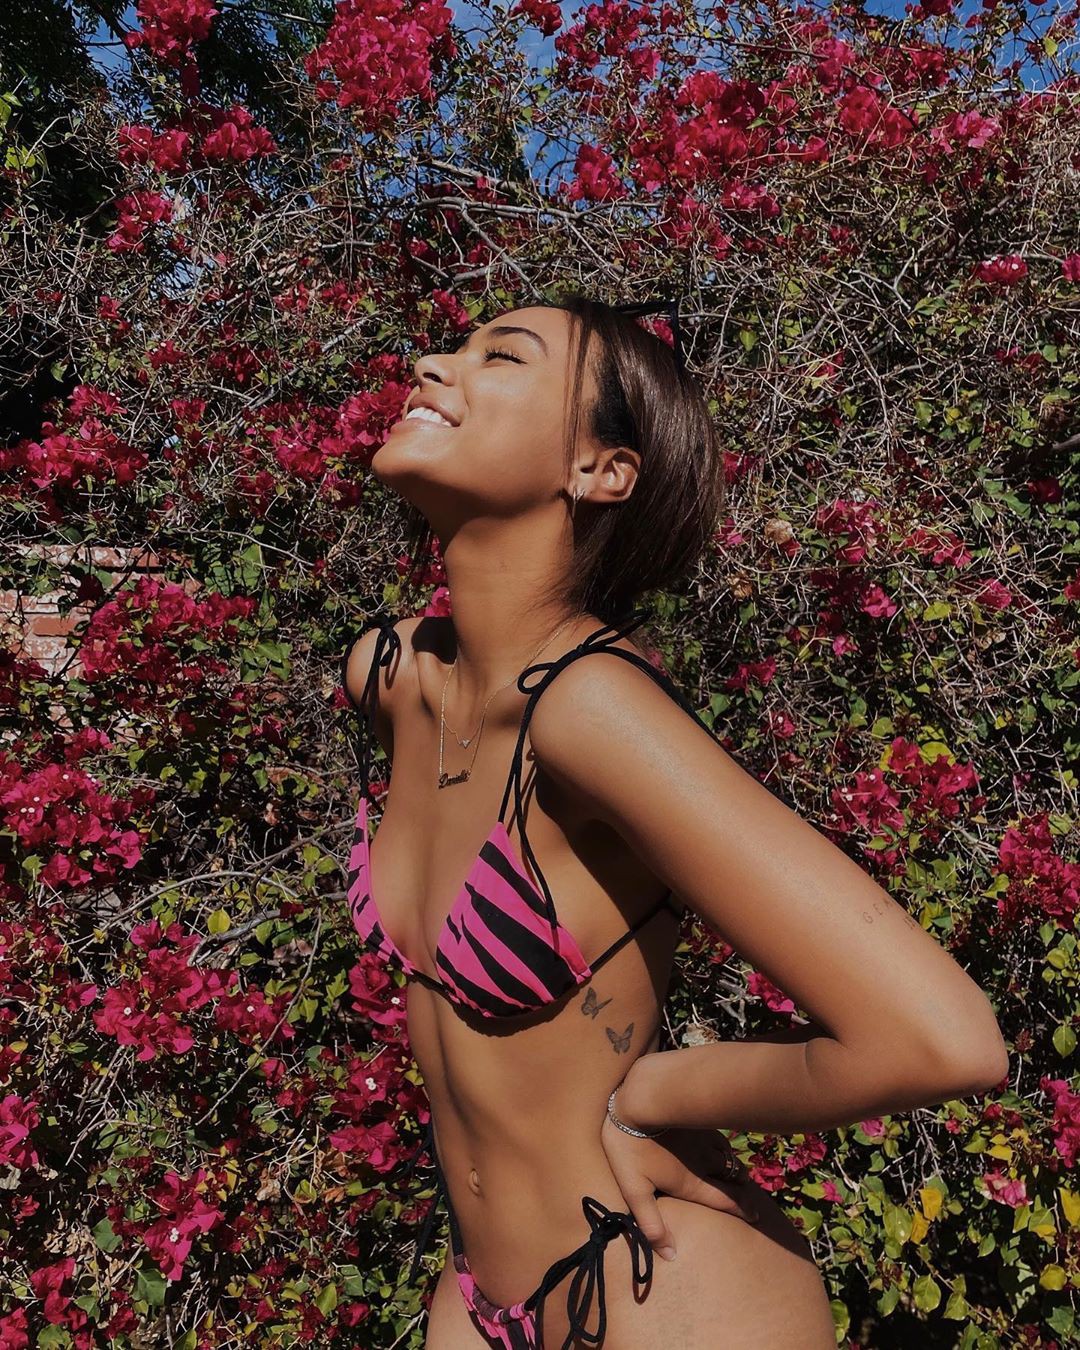 rosa Echa un vistazo a las fotos más populares de Instagram, la última foto de lencería, modelos de bikini sexy: Bikini rosa,  ropa interior rosa,  lencería rosa,  parte superior del traje de baño,  Daniela Perkins Instagram  